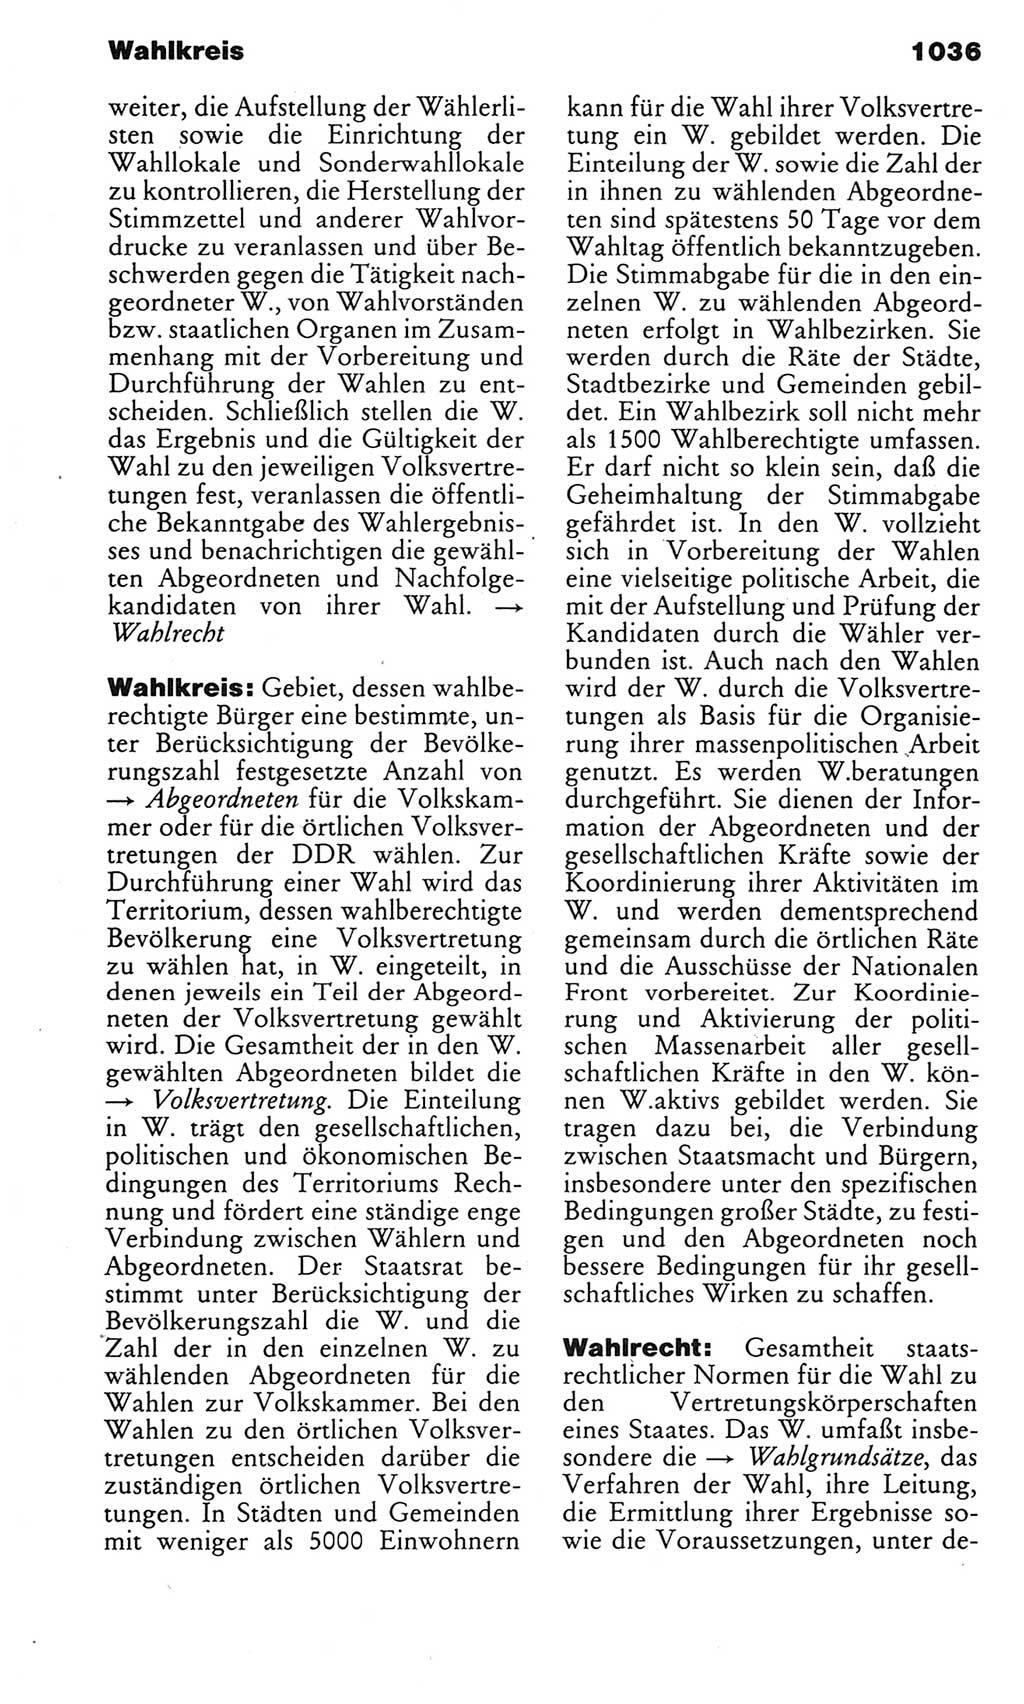 Kleines politisches Wörterbuch [Deutsche Demokratische Republik (DDR)] 1983, Seite 1036 (Kl. pol. Wb. DDR 1983, S. 1036)